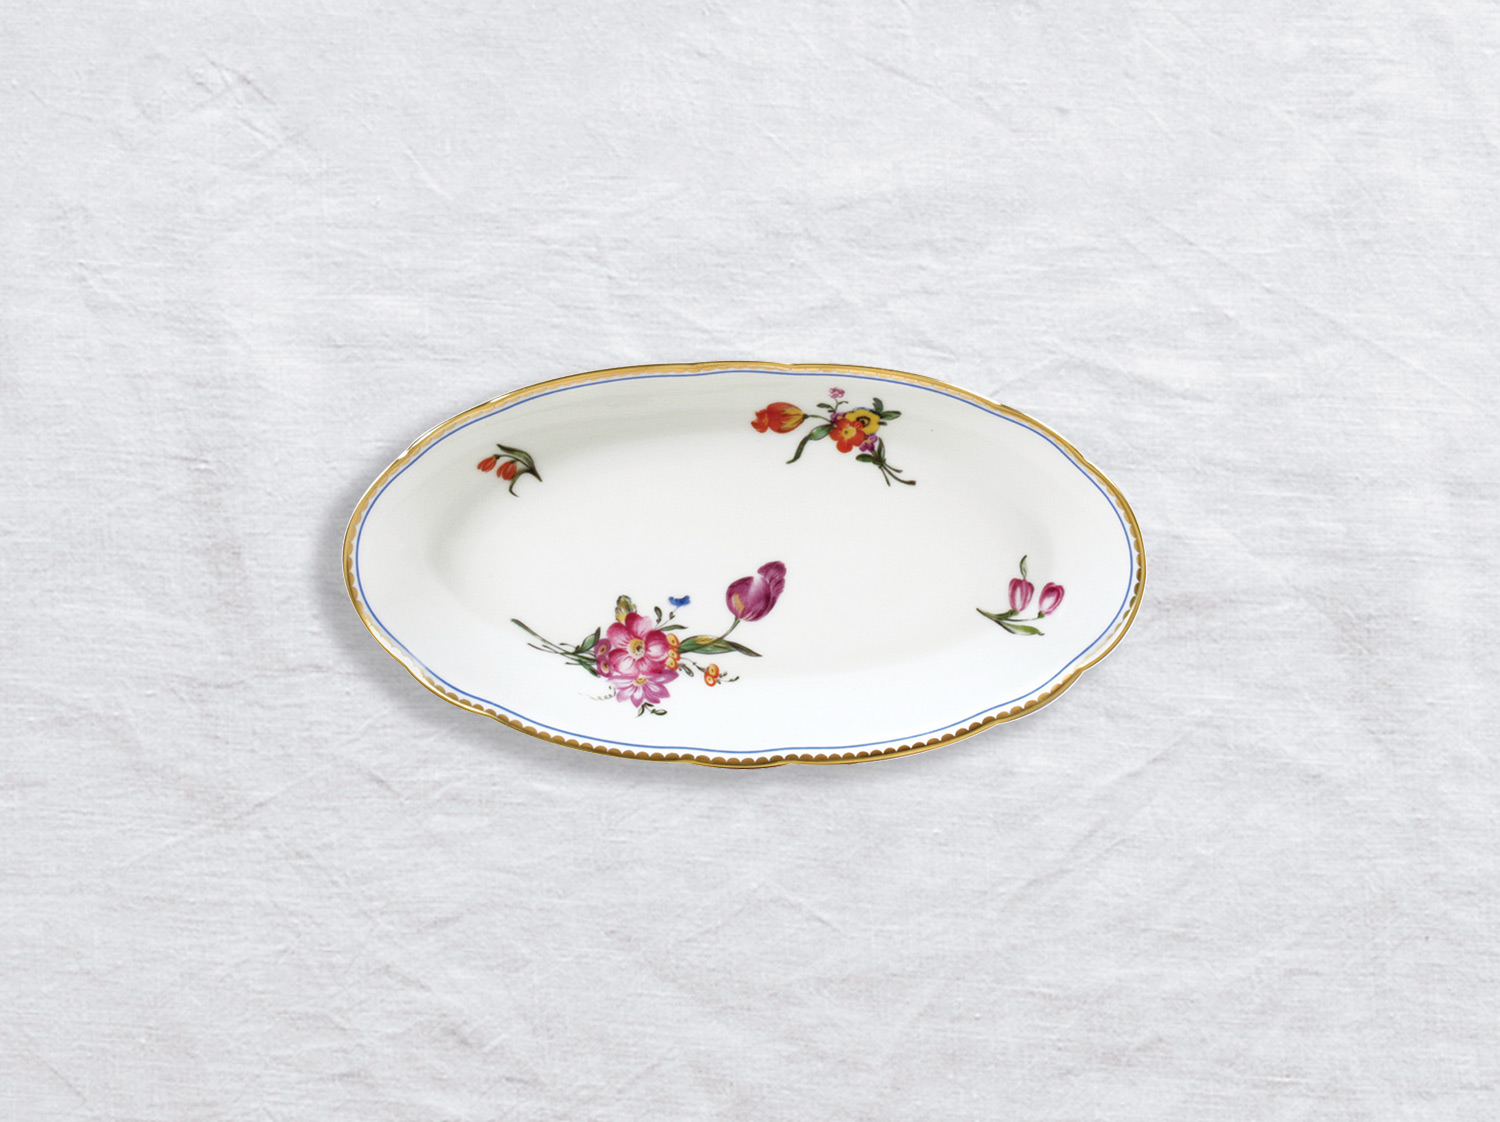 Ravier 21 x 15 cm en porcelaine de la collection A la reine Bernardaud